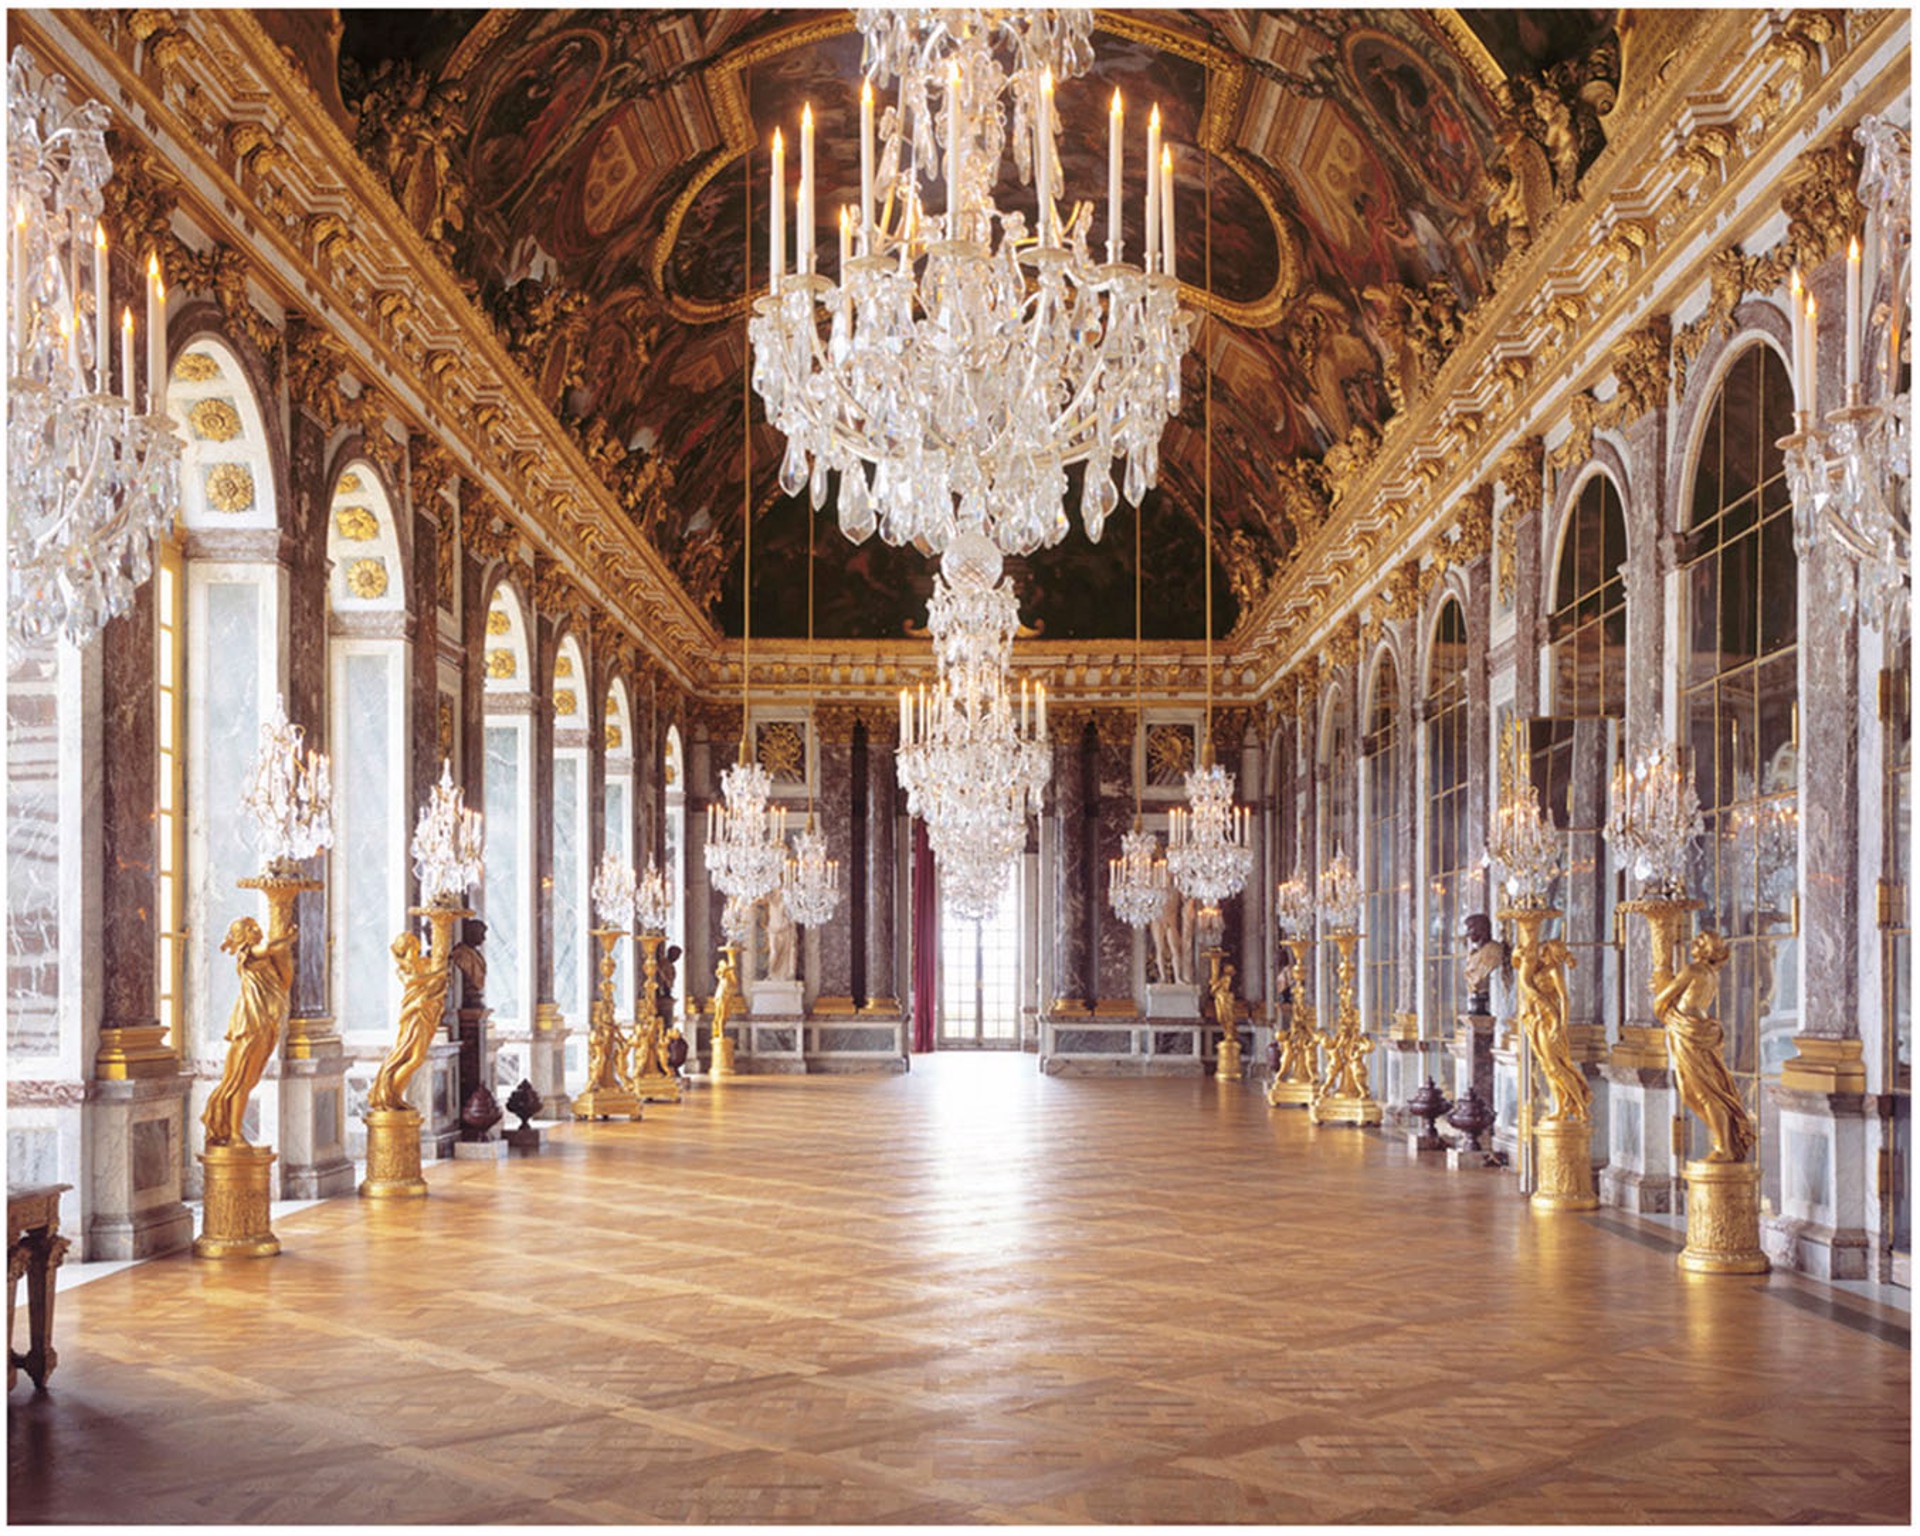 Galerie des Glaces, Chateau de Versailles. France. by Reinhard Gorner